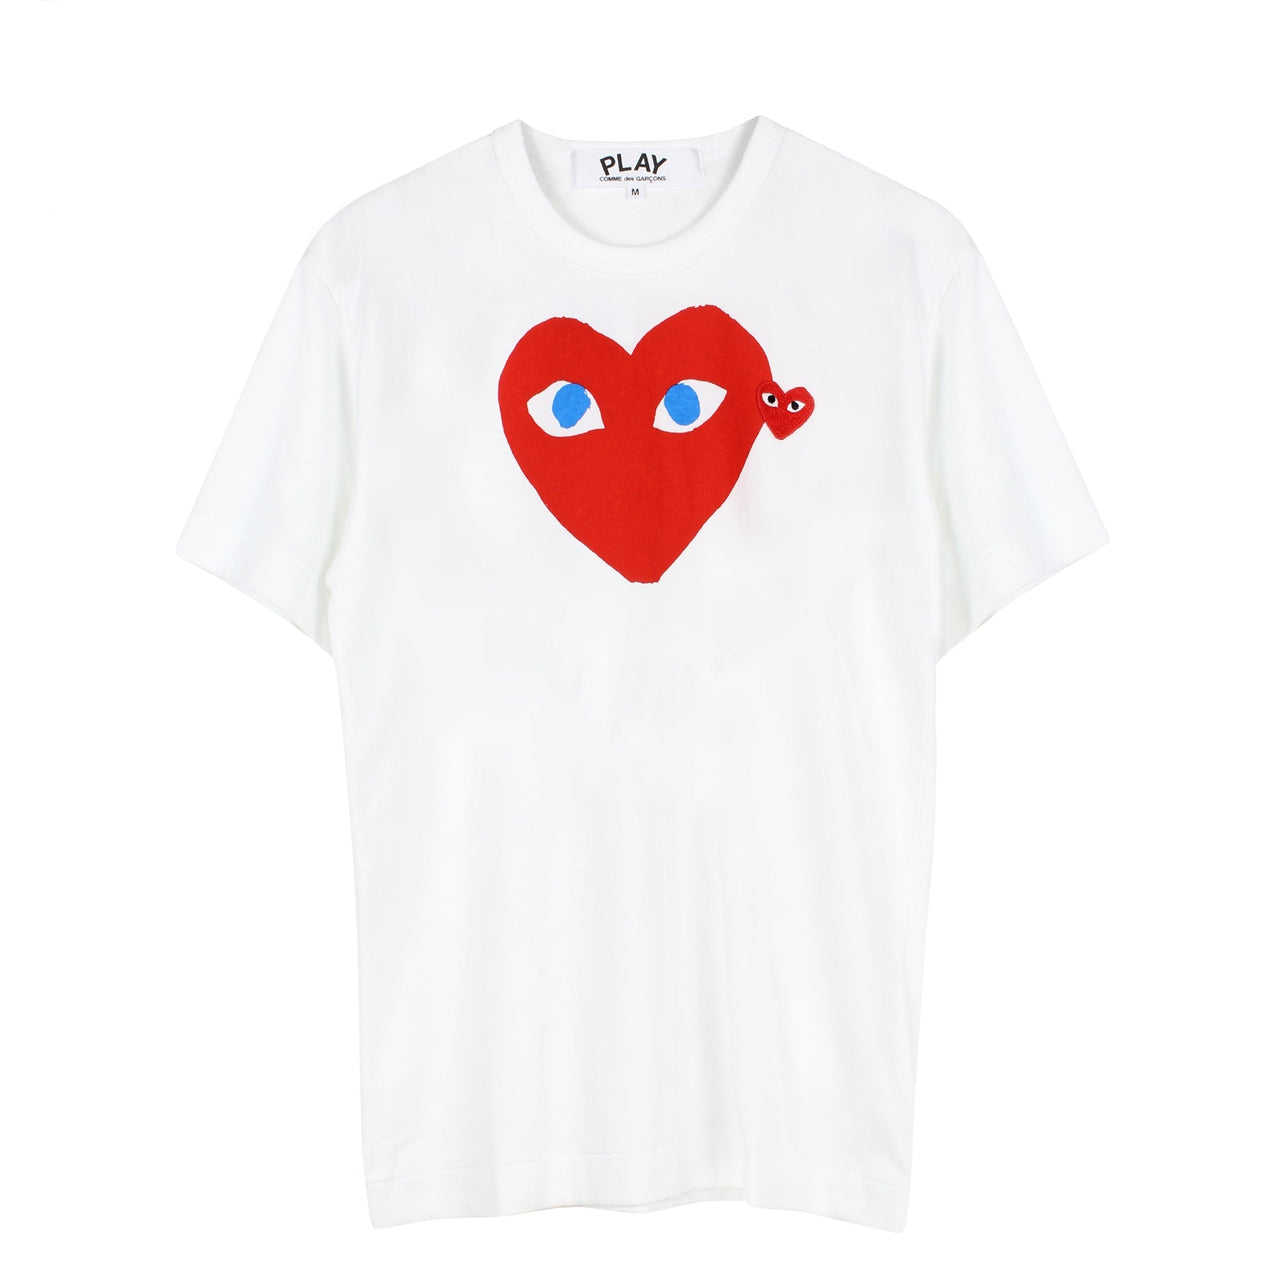 Cdg play t-shirt heart blue eyes